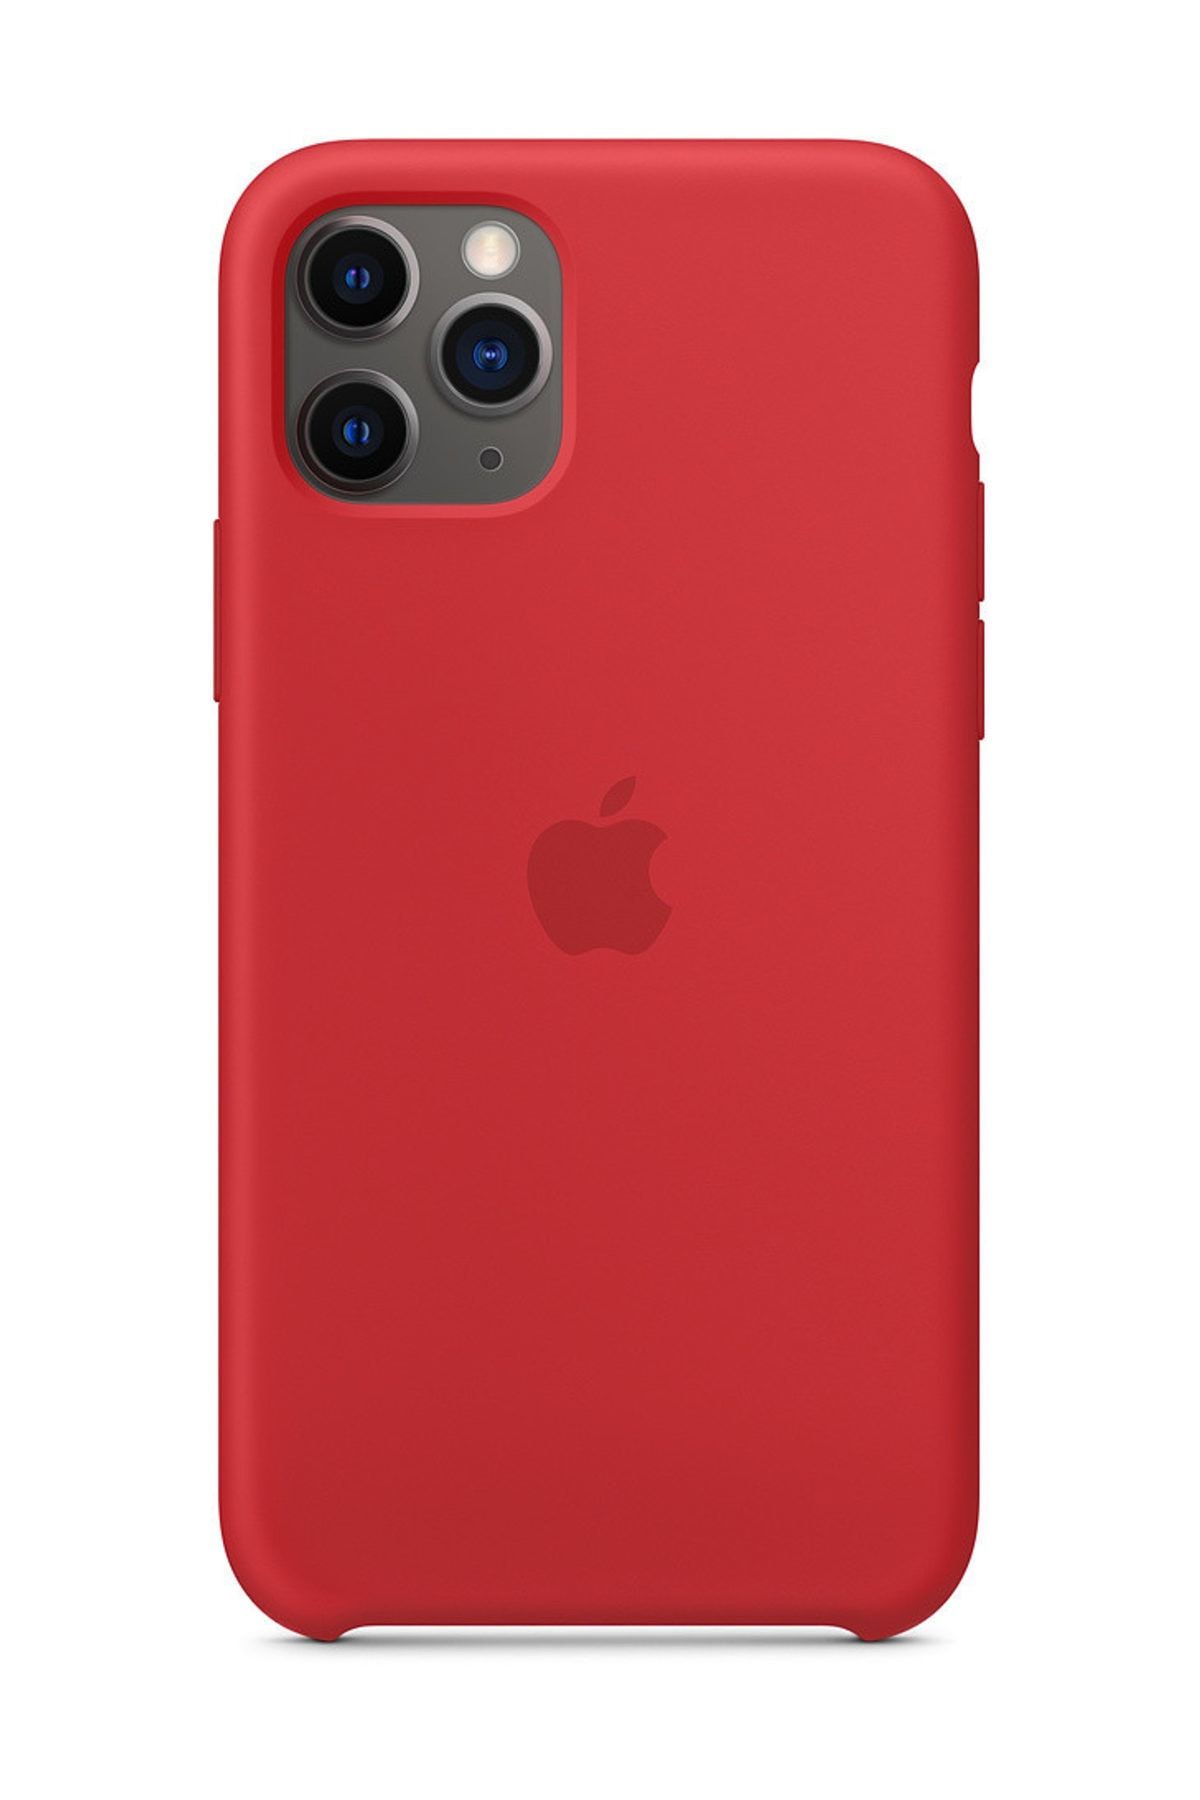 Telefon Aksesuarları iPhone 11 Pro Silikon Kılıf-MWVU2ZM/A - İthalatçı Garantili - Kırmızı